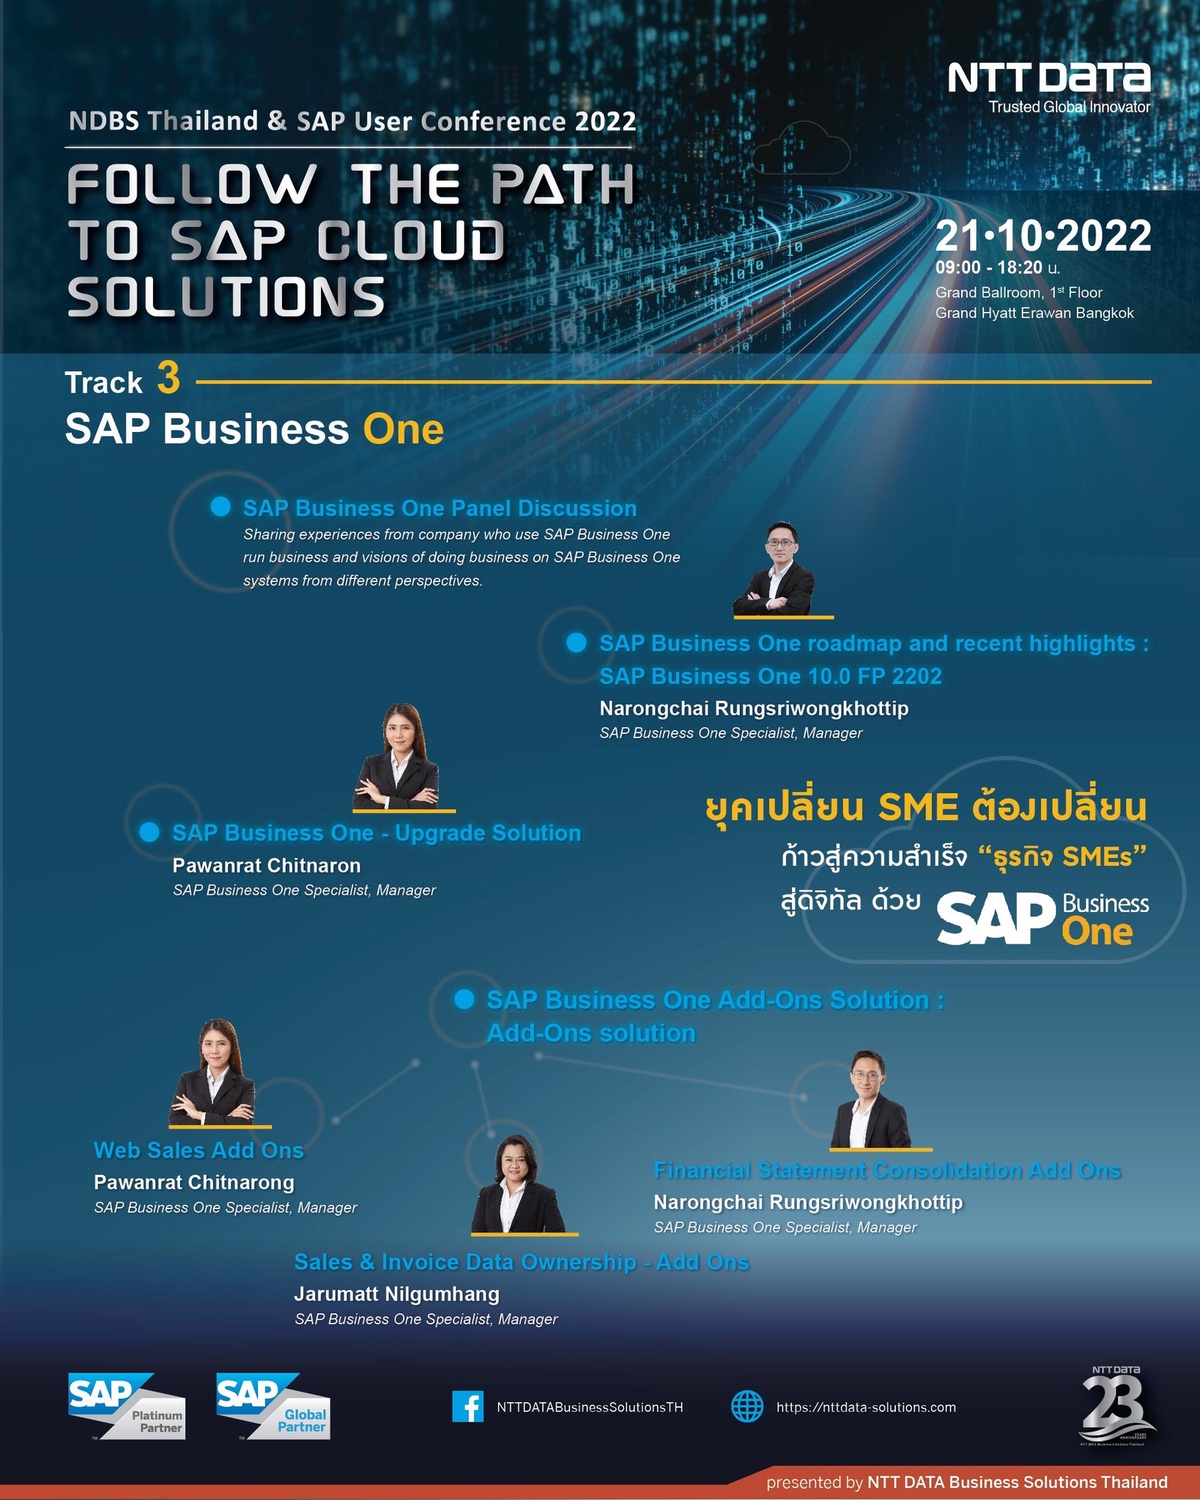 เปลี่ยนโฉมธุรกิจ เพื่อให้ก้าวนำโลก กับการเรียนรู้ที่จะใช้ประโยชน์จากระบบ SAP Business One โดย NDBS Thailand